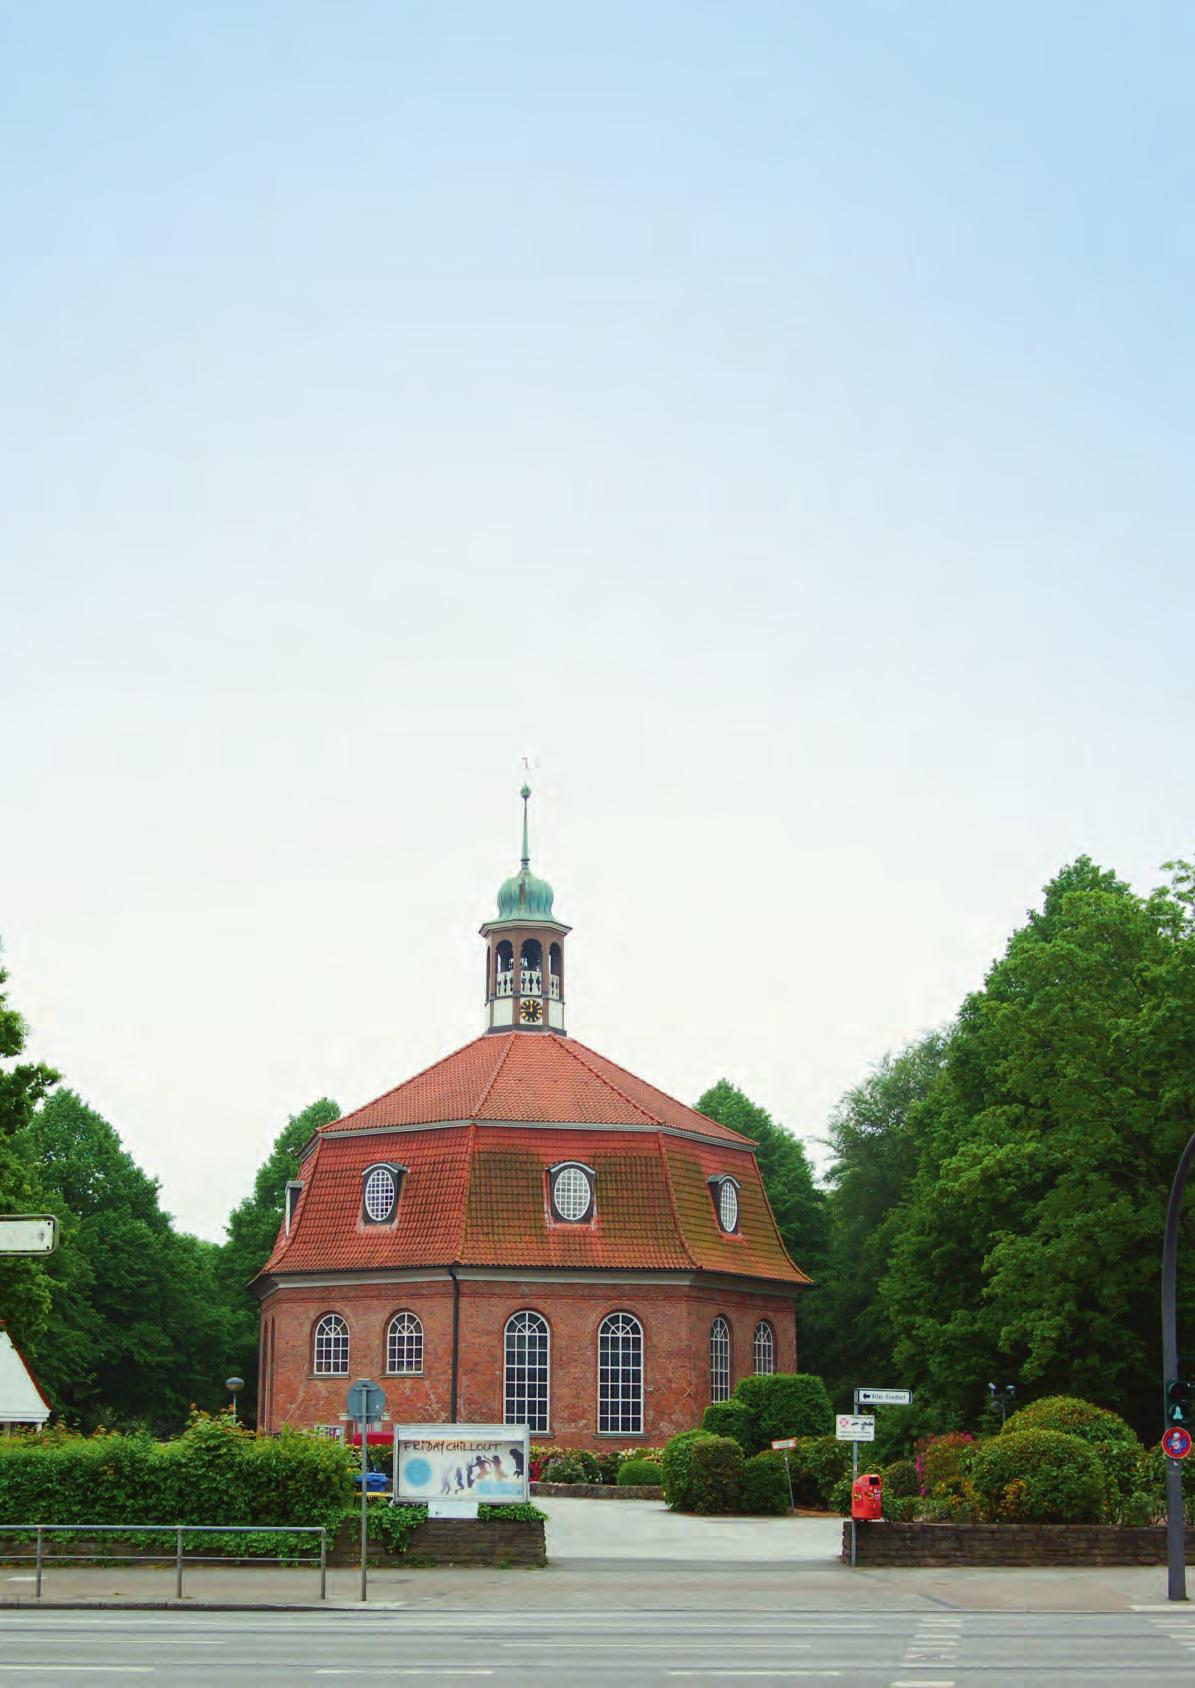 Achteckig ist die weithin bekannte Kirche am Markt am Rande des Niendorfer Geheges. Gebaut wurde sie vor 250 Jahren Fotos: bk  